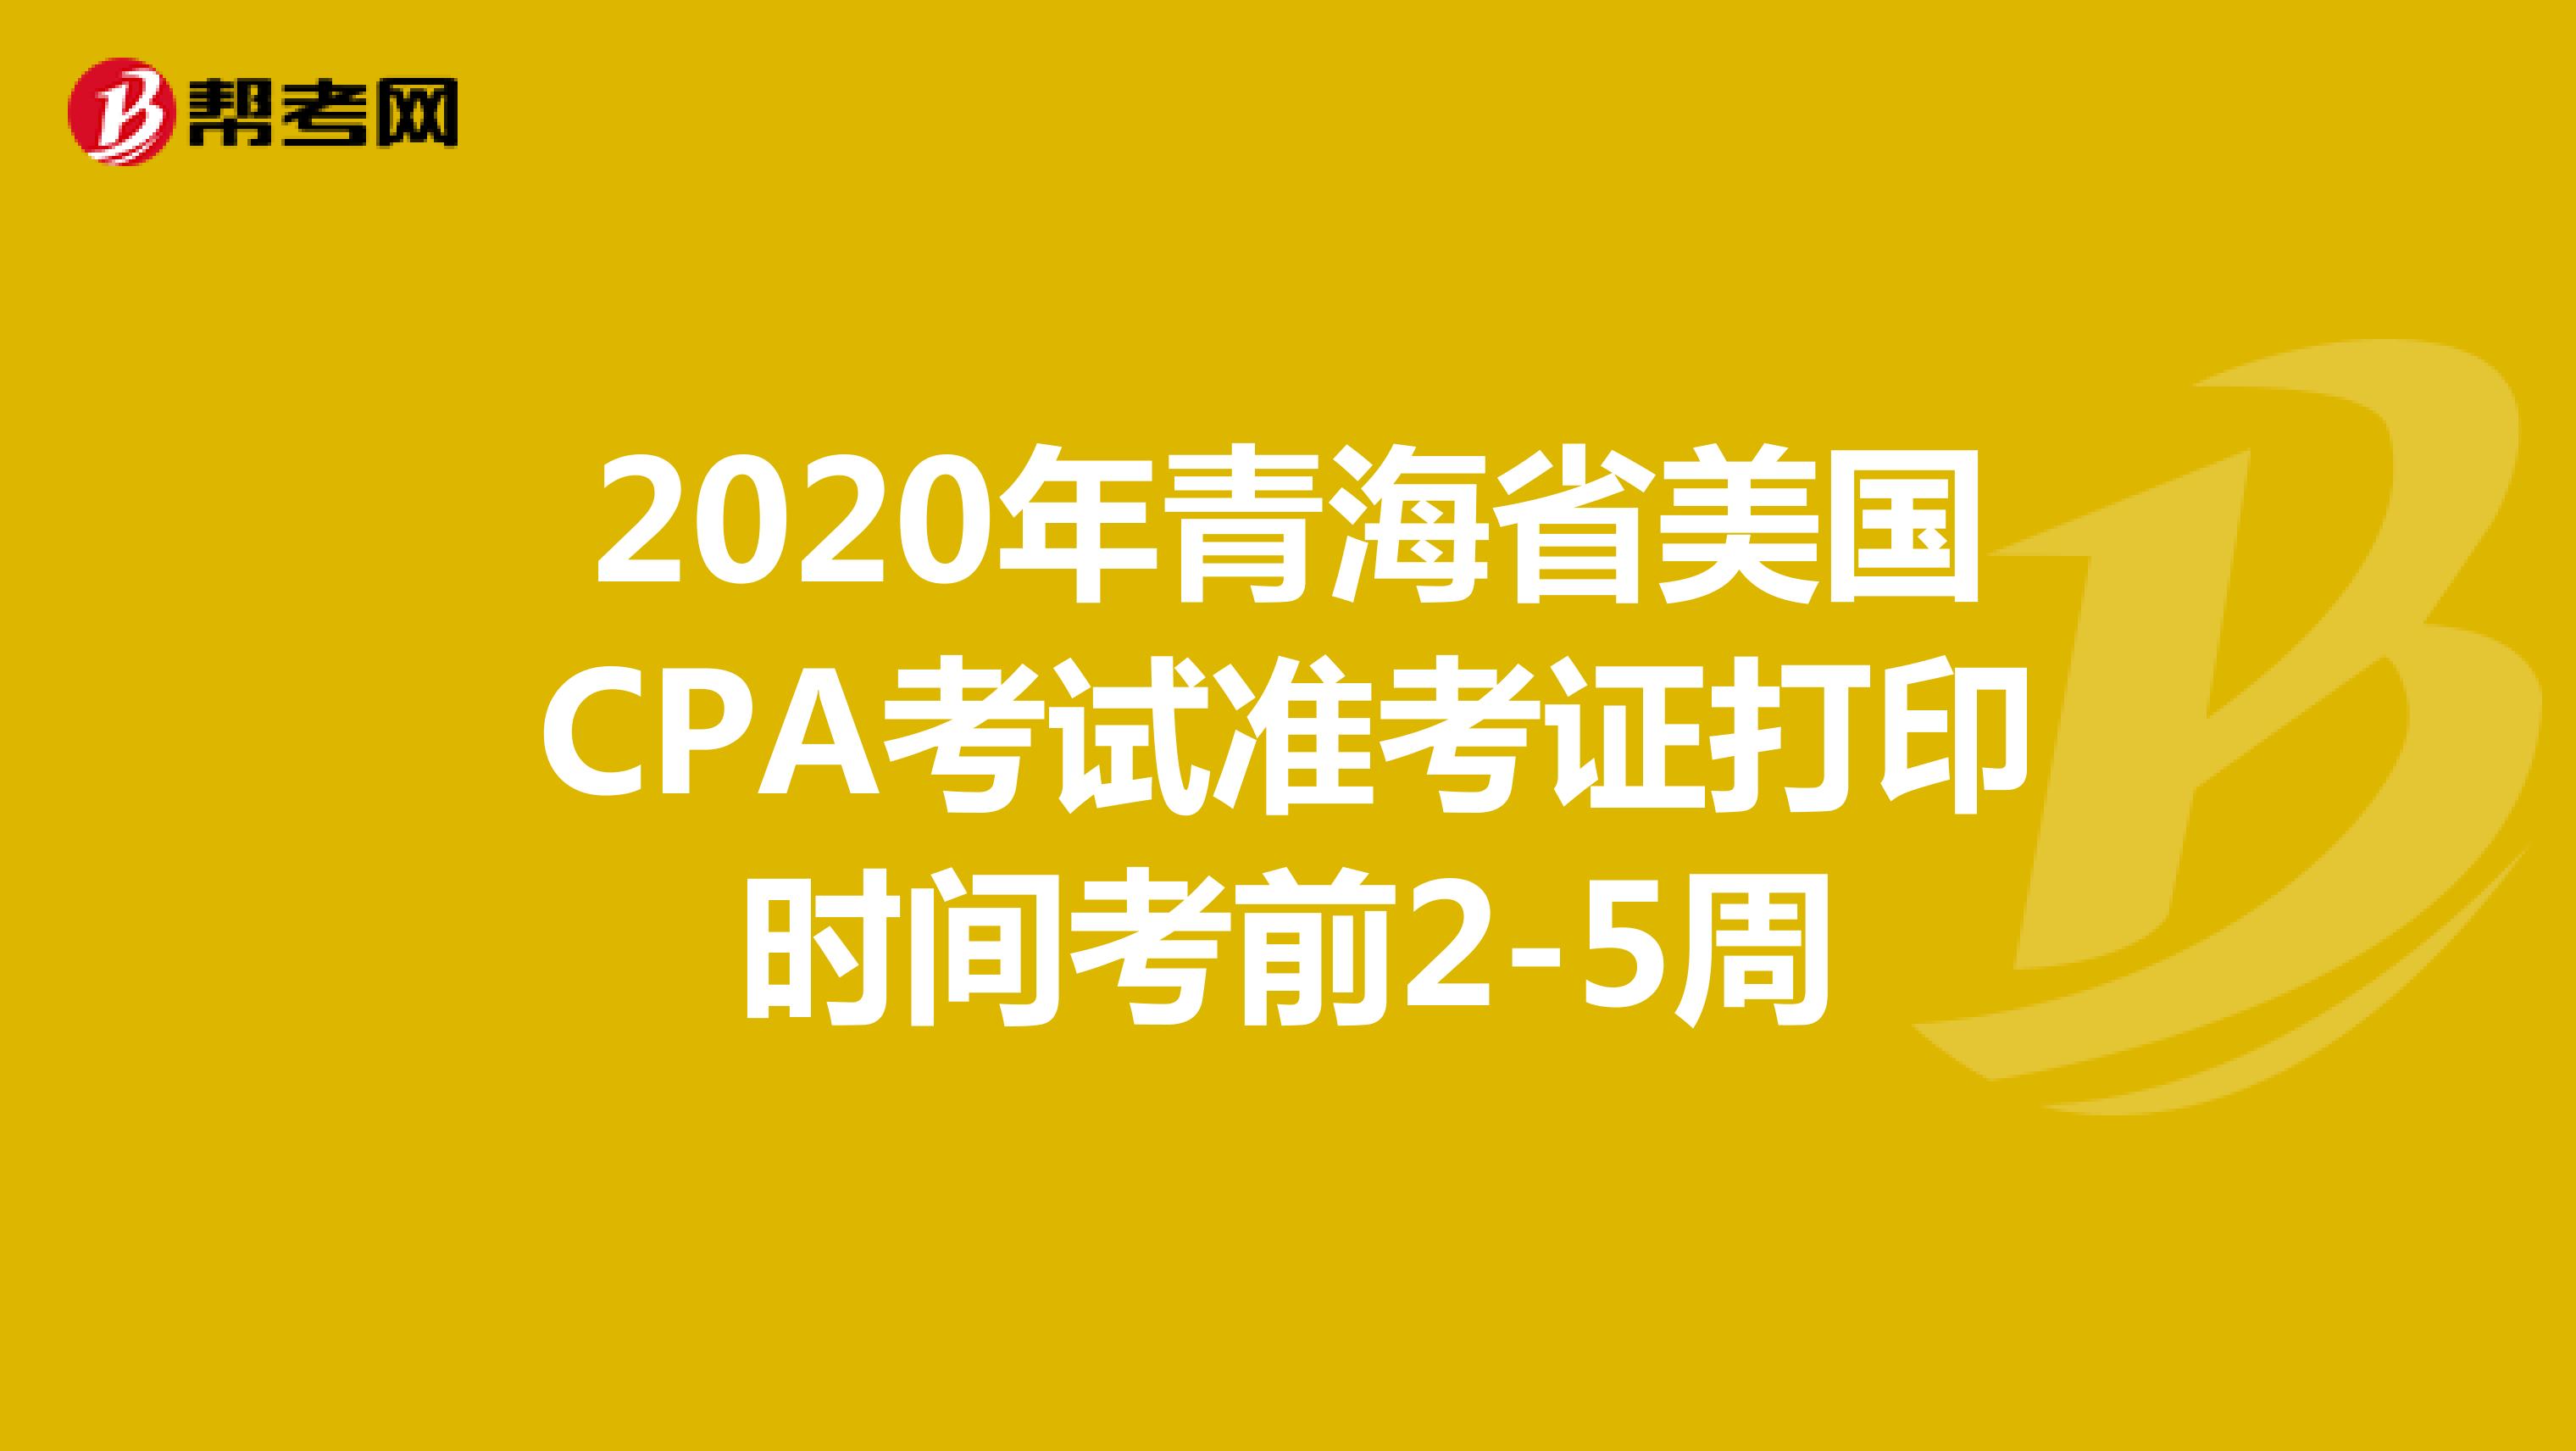 2020年青海省美国CPA考试准考证打印时间考前2-5周